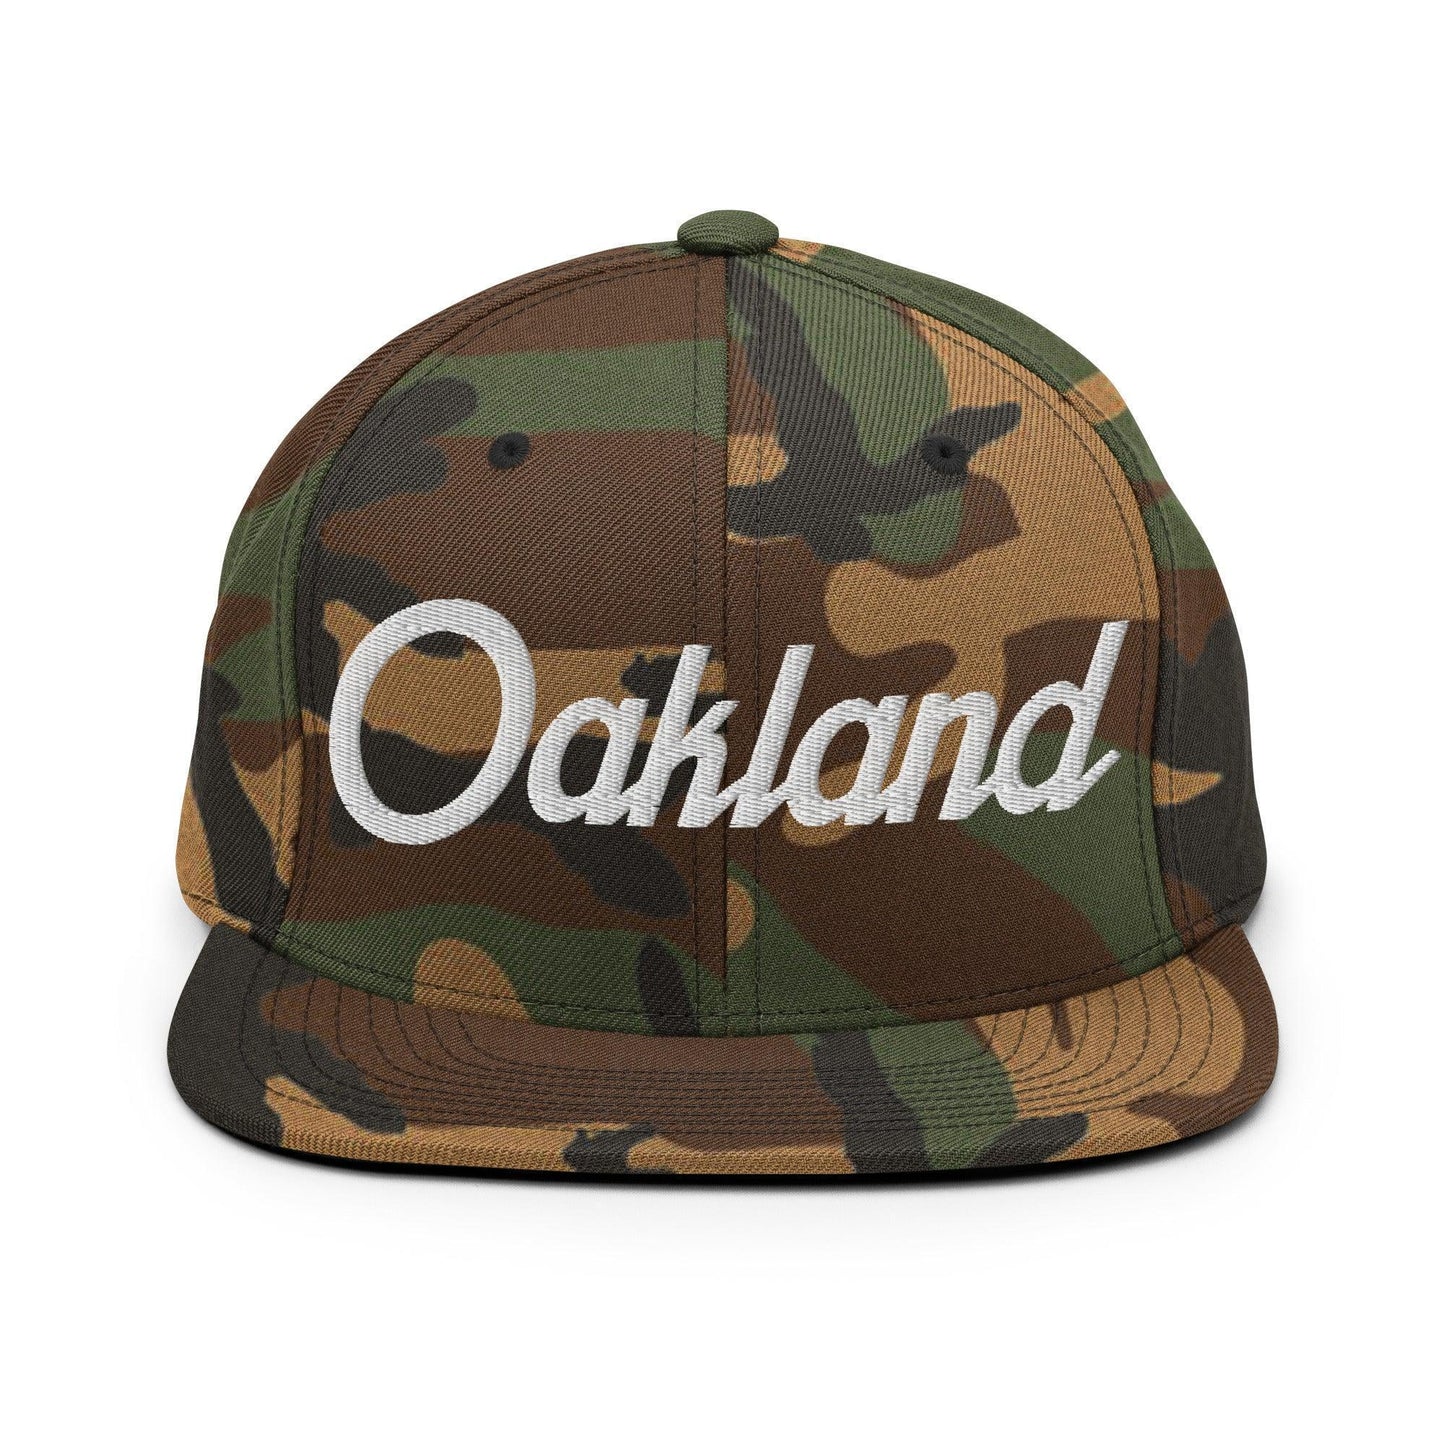 Oakland Script Snapback Hat Green Camo